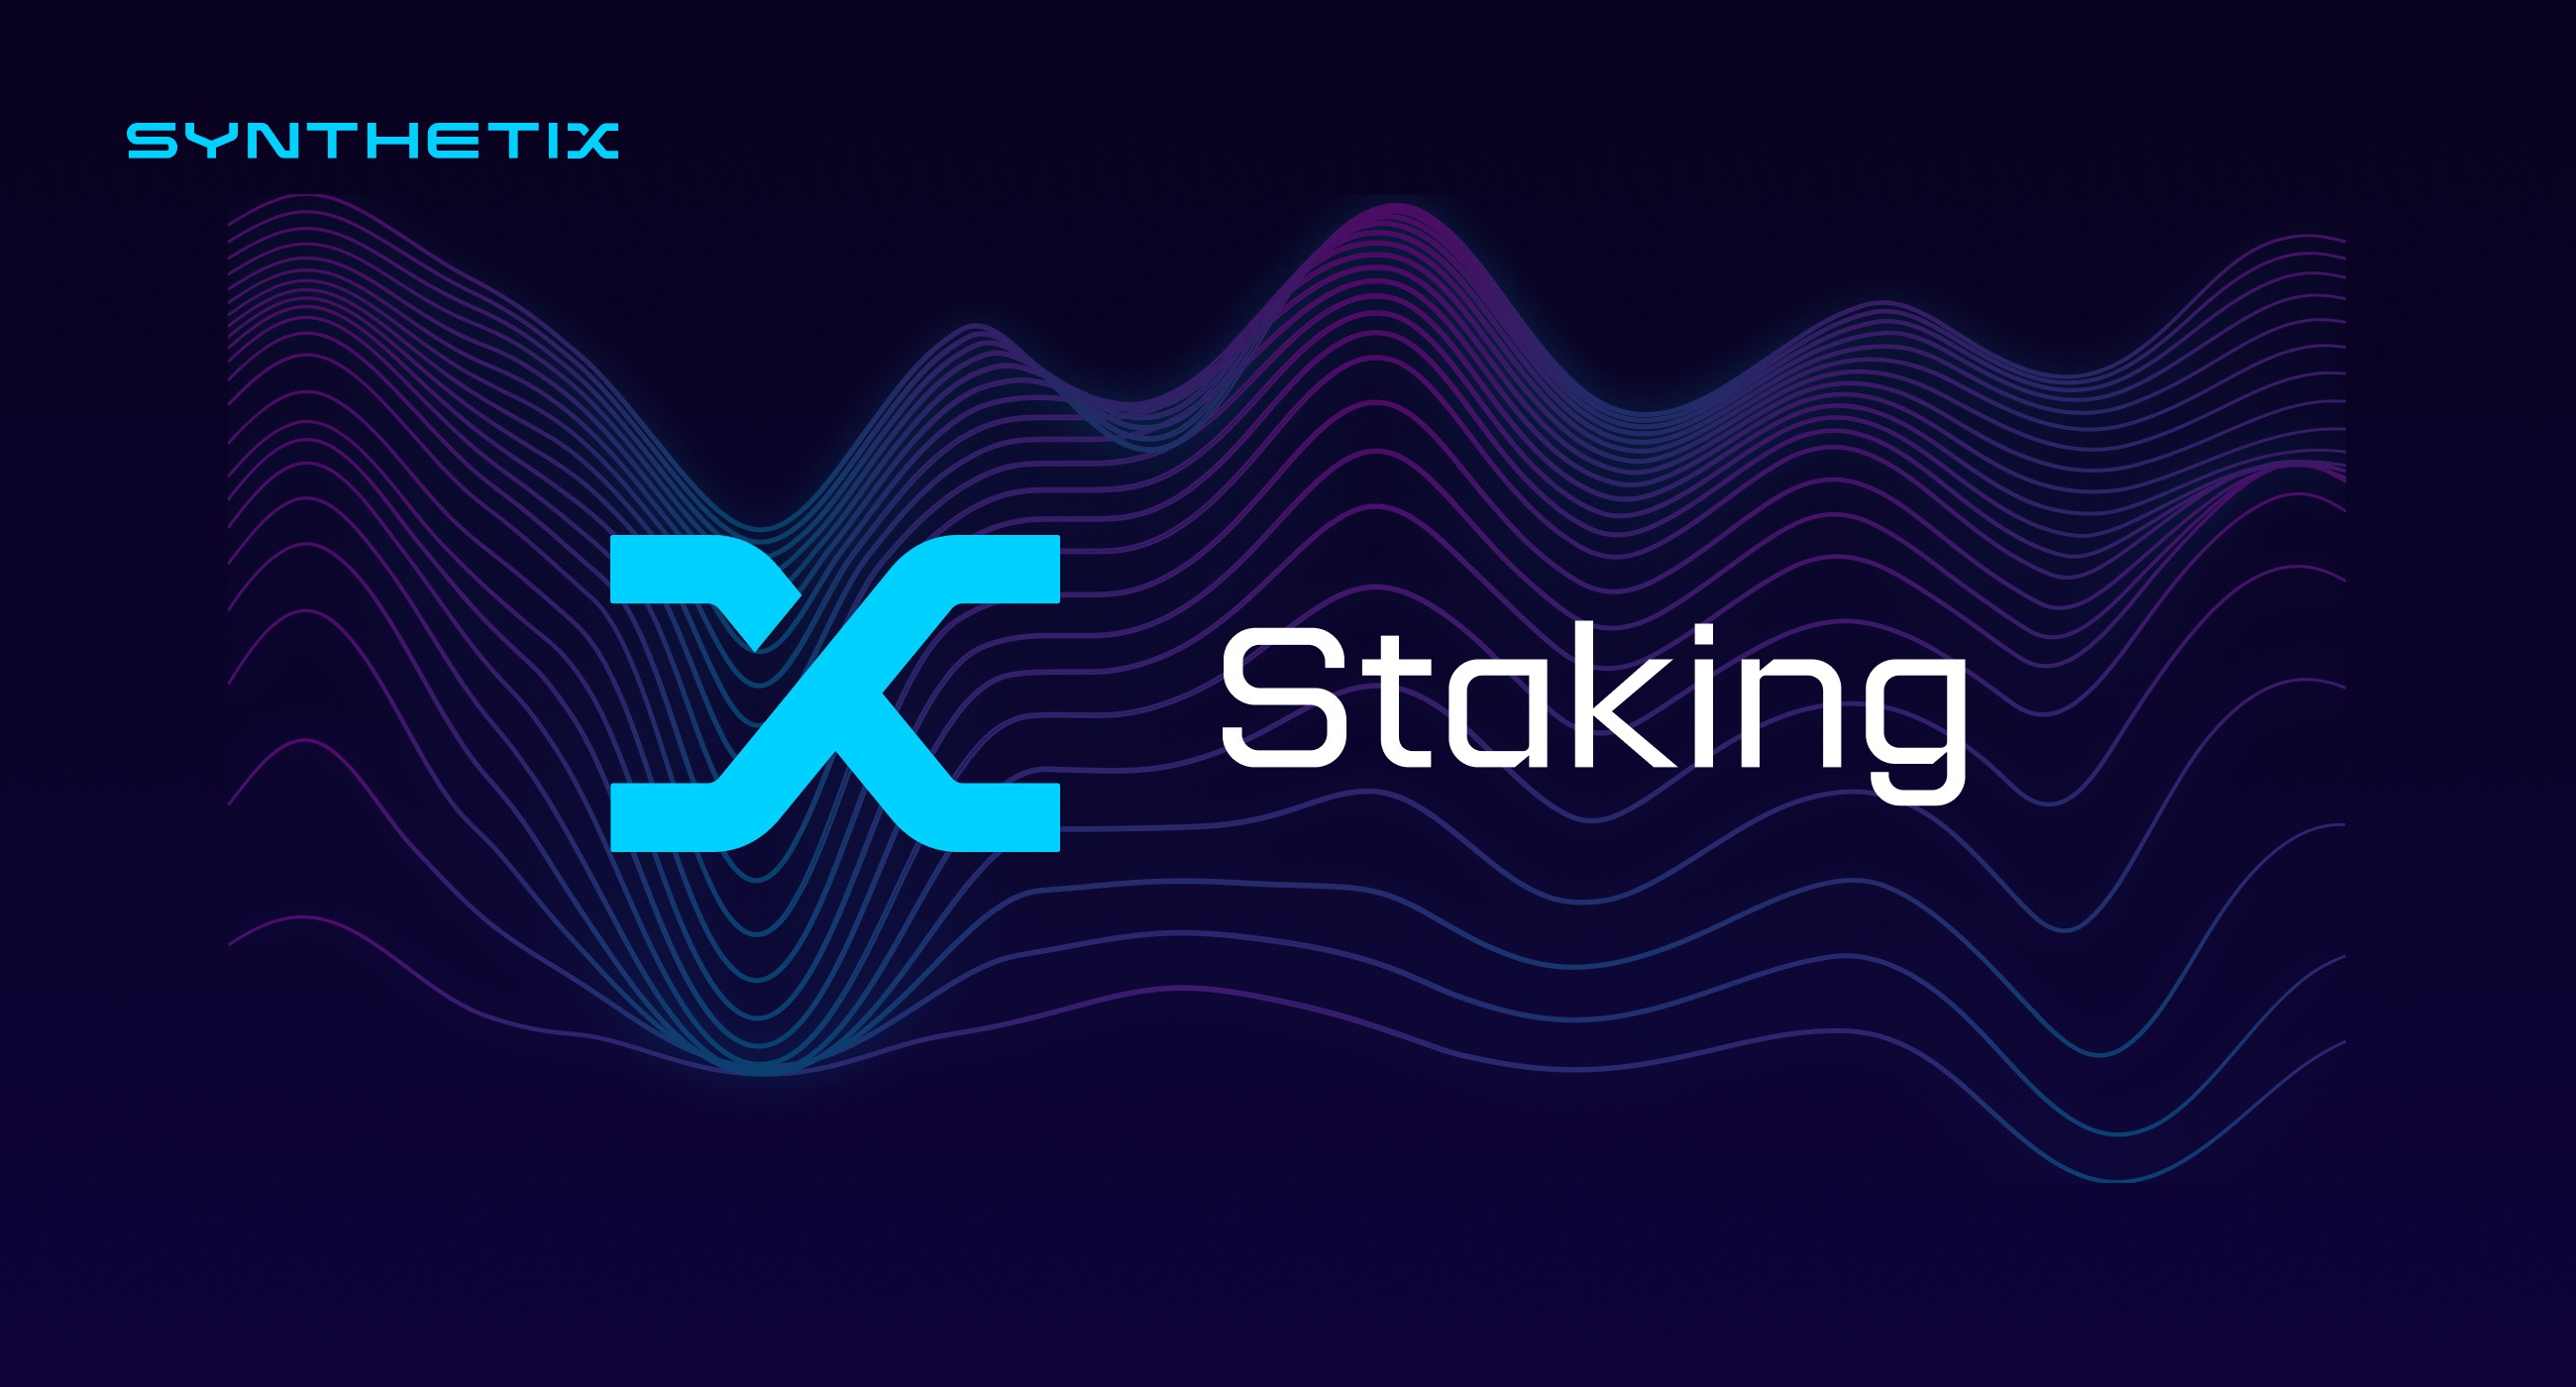 Meet the new Synthetix Staking dApp!